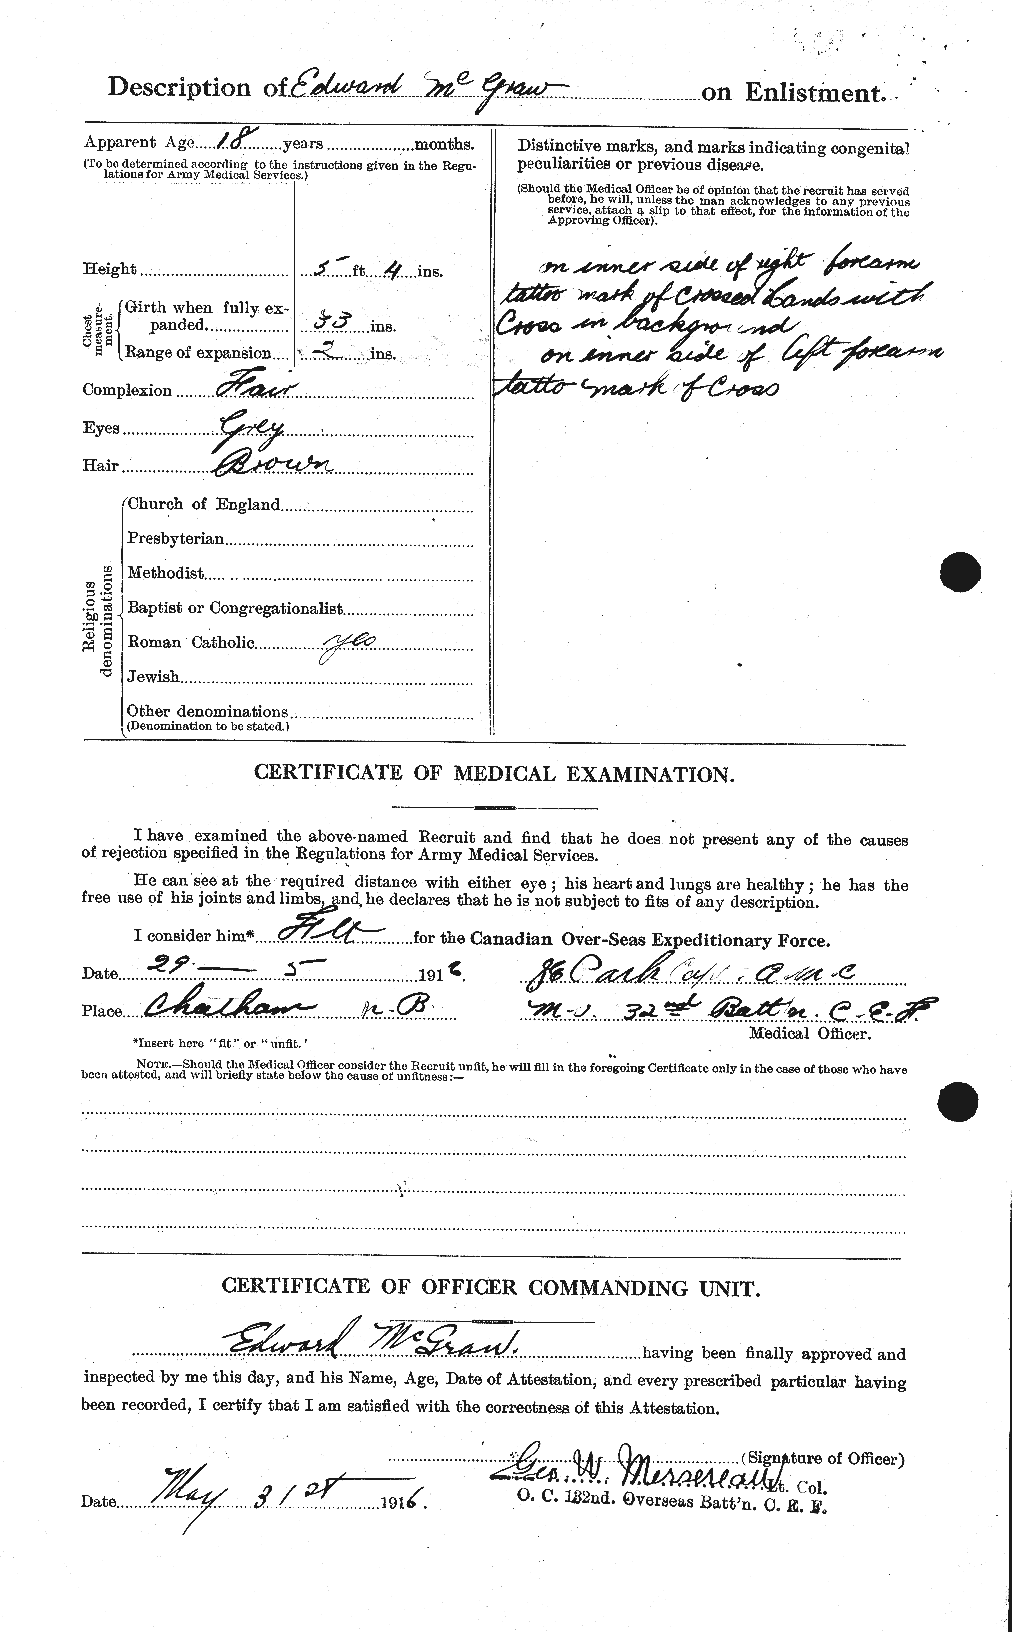 Dossiers du Personnel de la Première Guerre mondiale - CEC 523721b